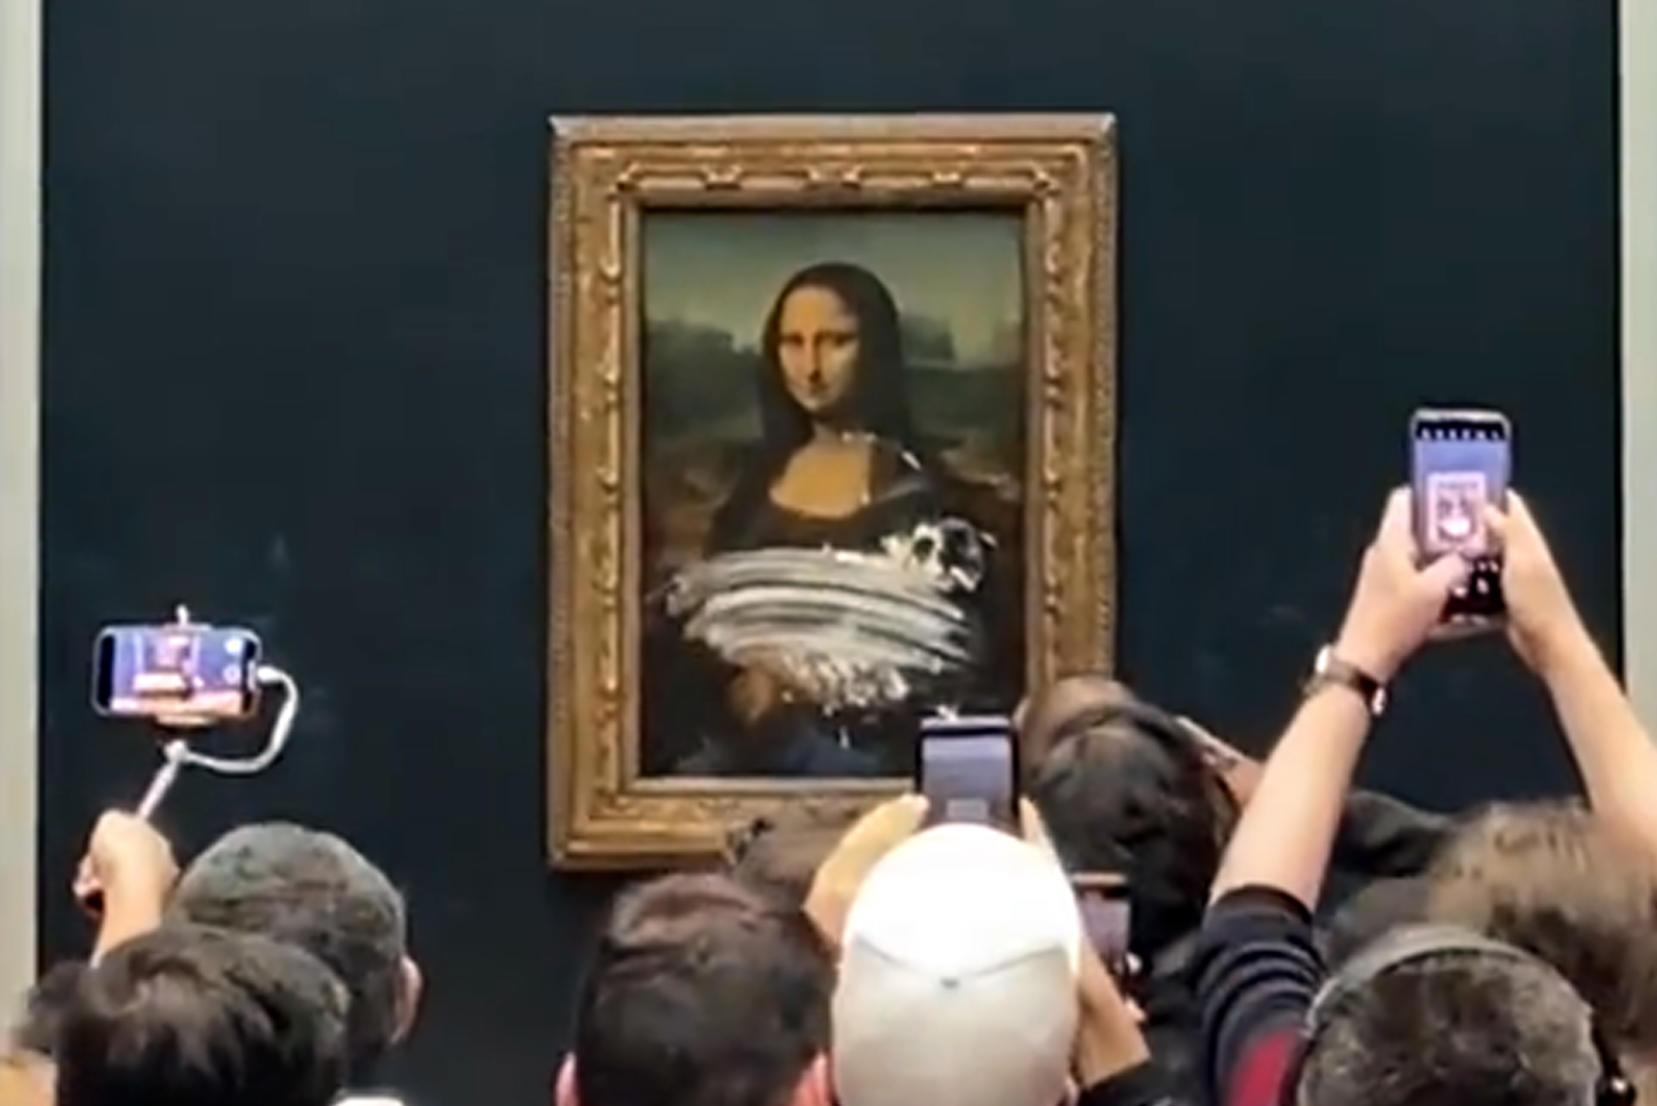 Al Louvre un uomo lancia una torta contro la Gioconda